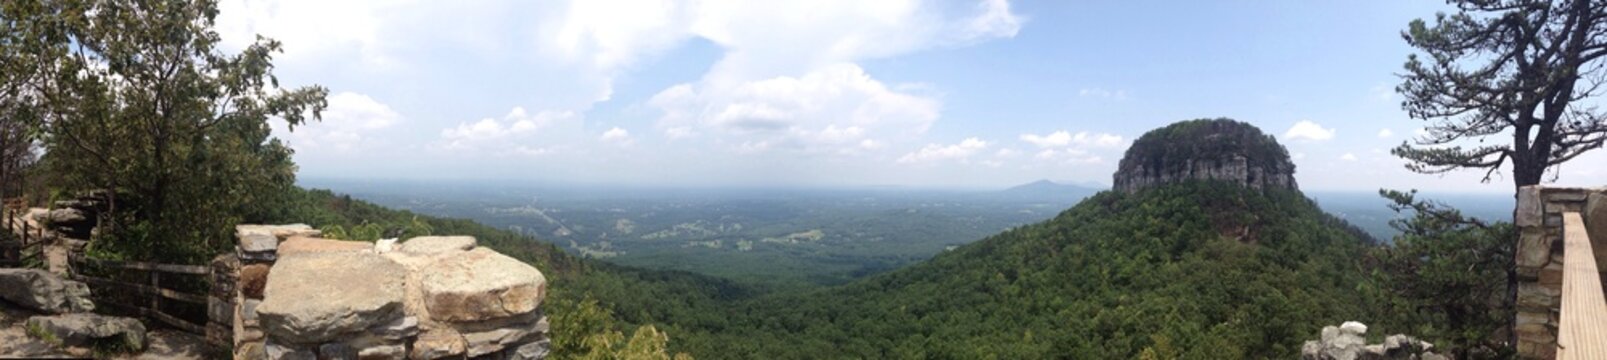 Pilot Mountain Panoramic